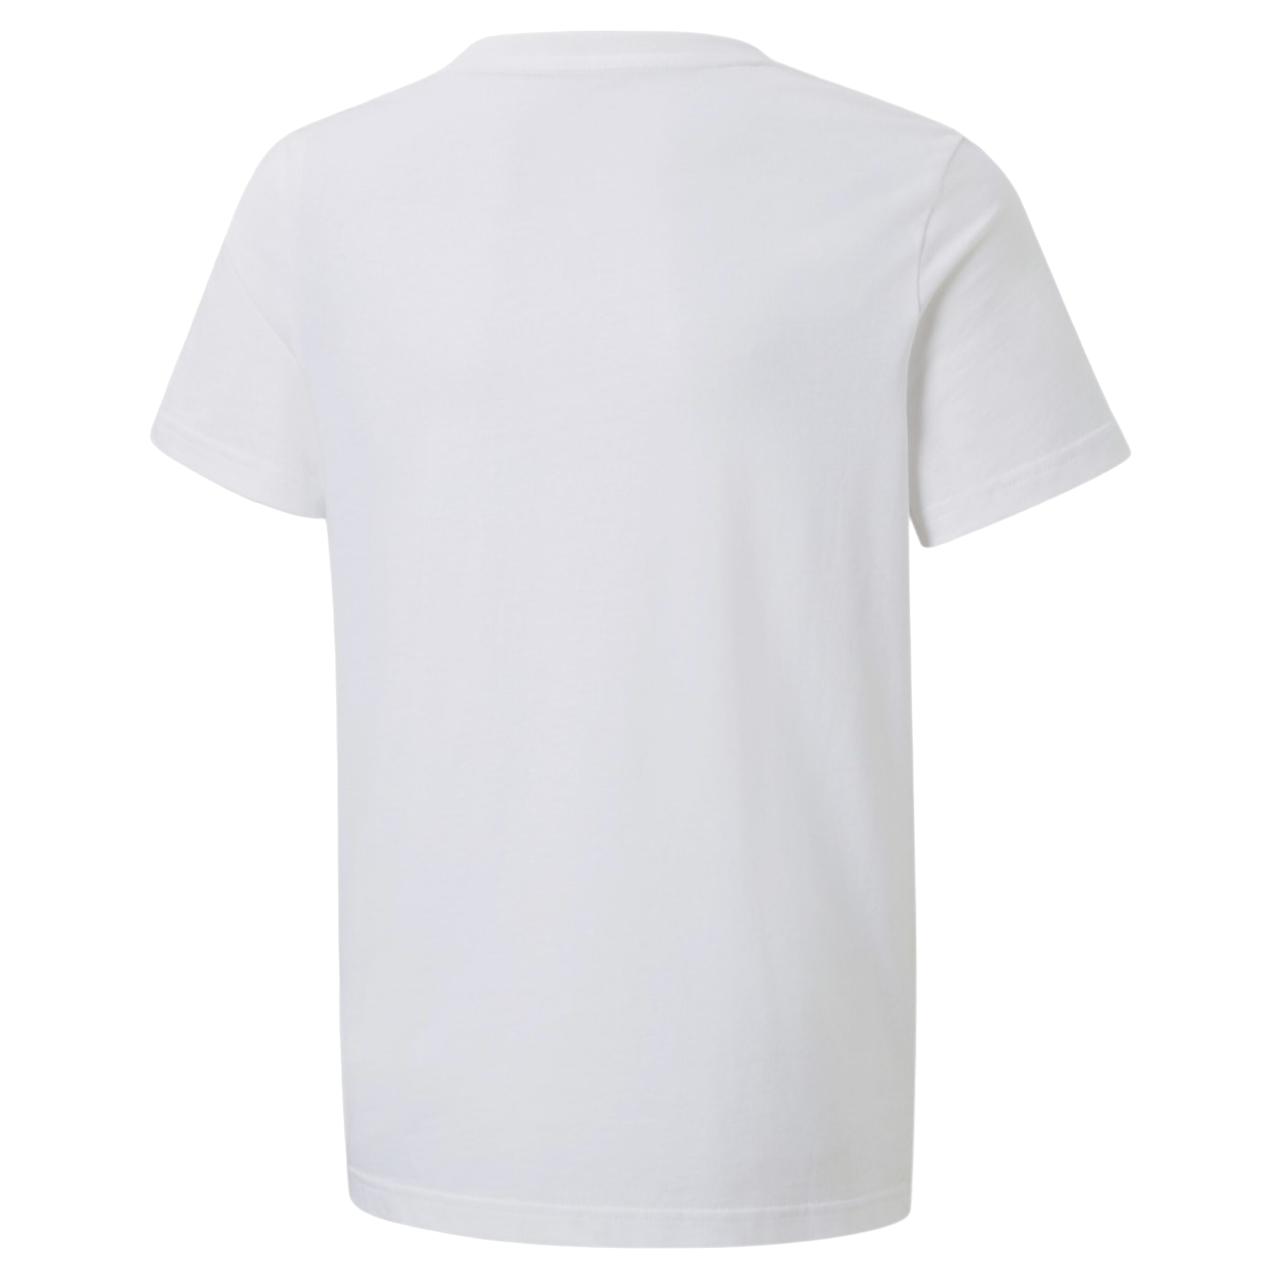 Puma maglietta manica corta da ragazzi in cotone Tape 847300-02 bianco